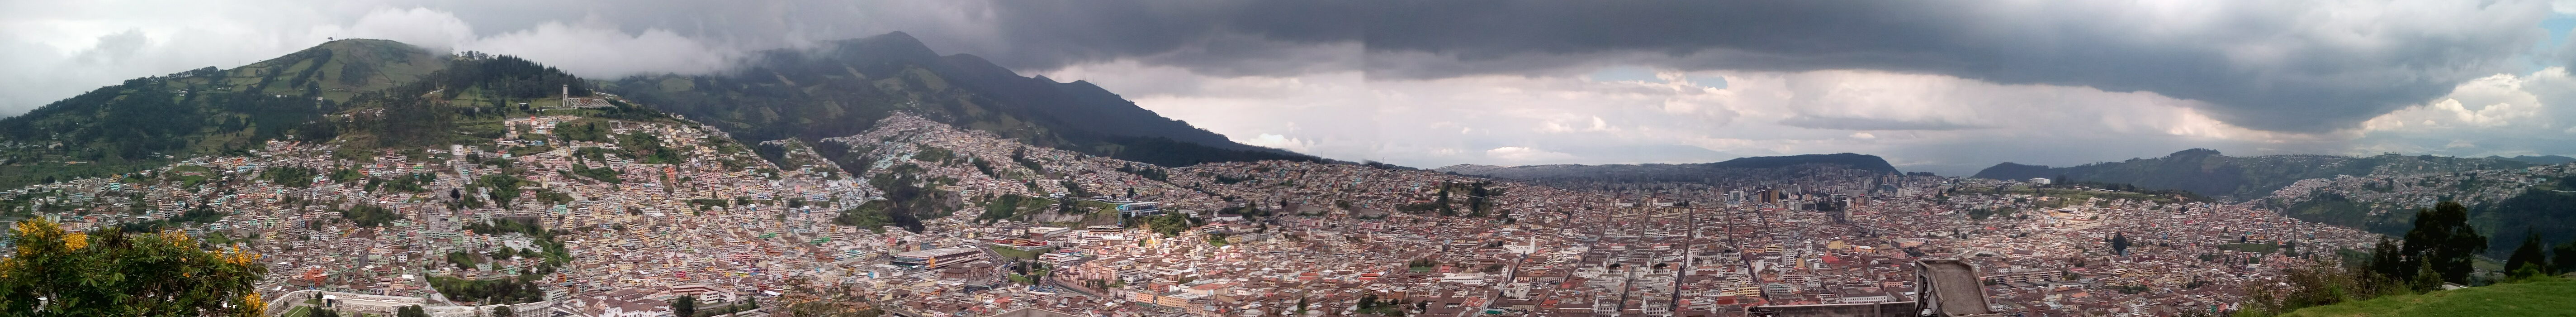 Le plateau de Quito sous le massif du volcan Pichincha, décembre 2016